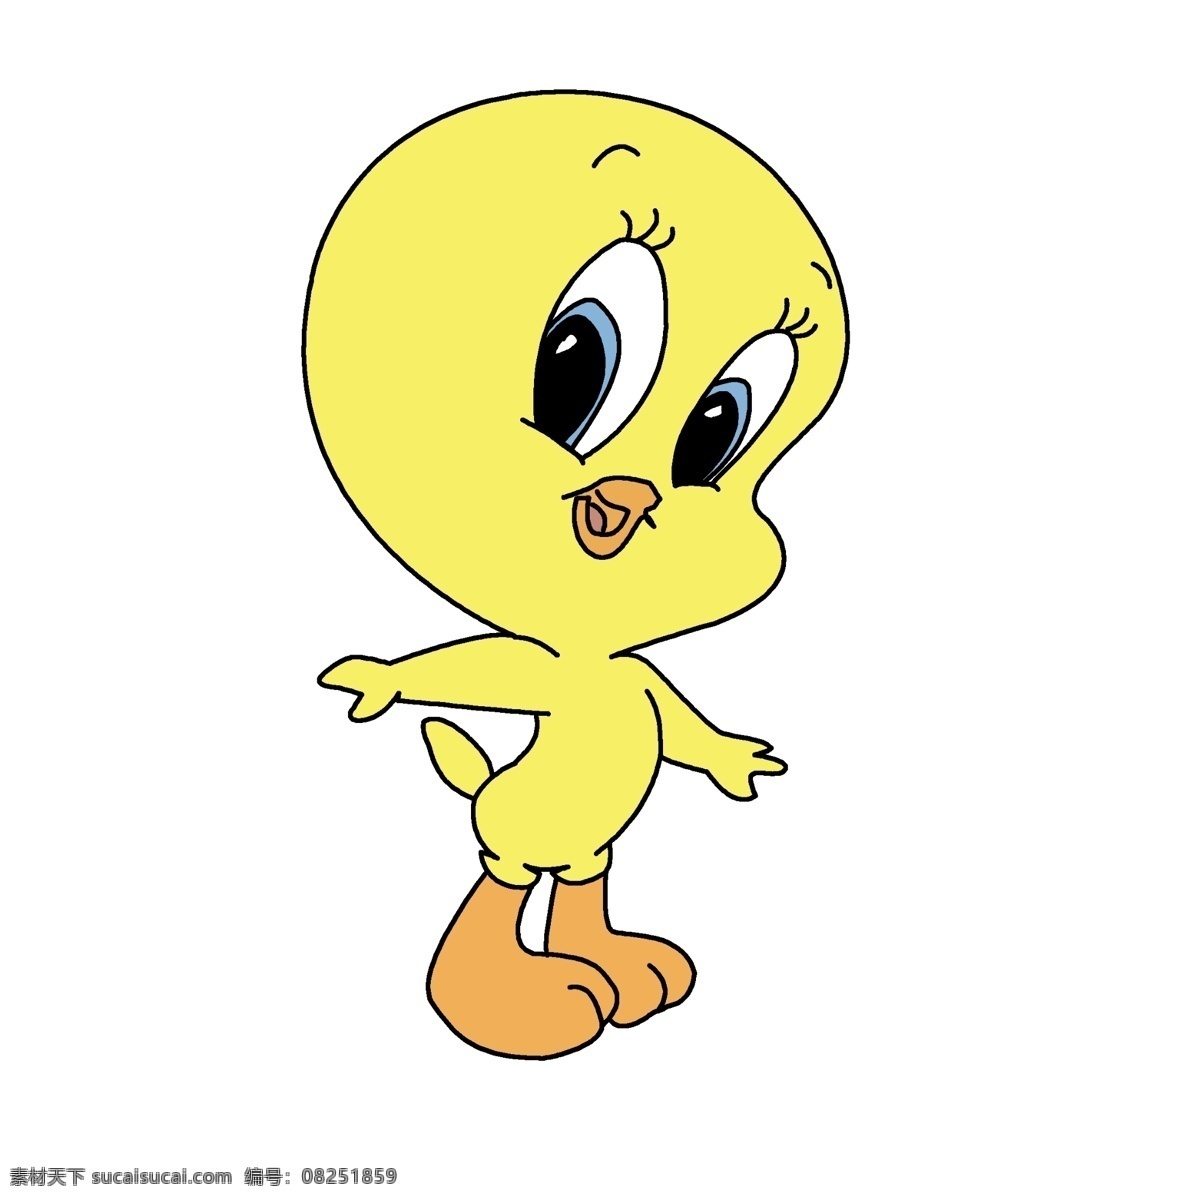 小黄鸭 黄色的鸭子 卡通人物 动画人物 鸭子 动漫动画 动漫人物